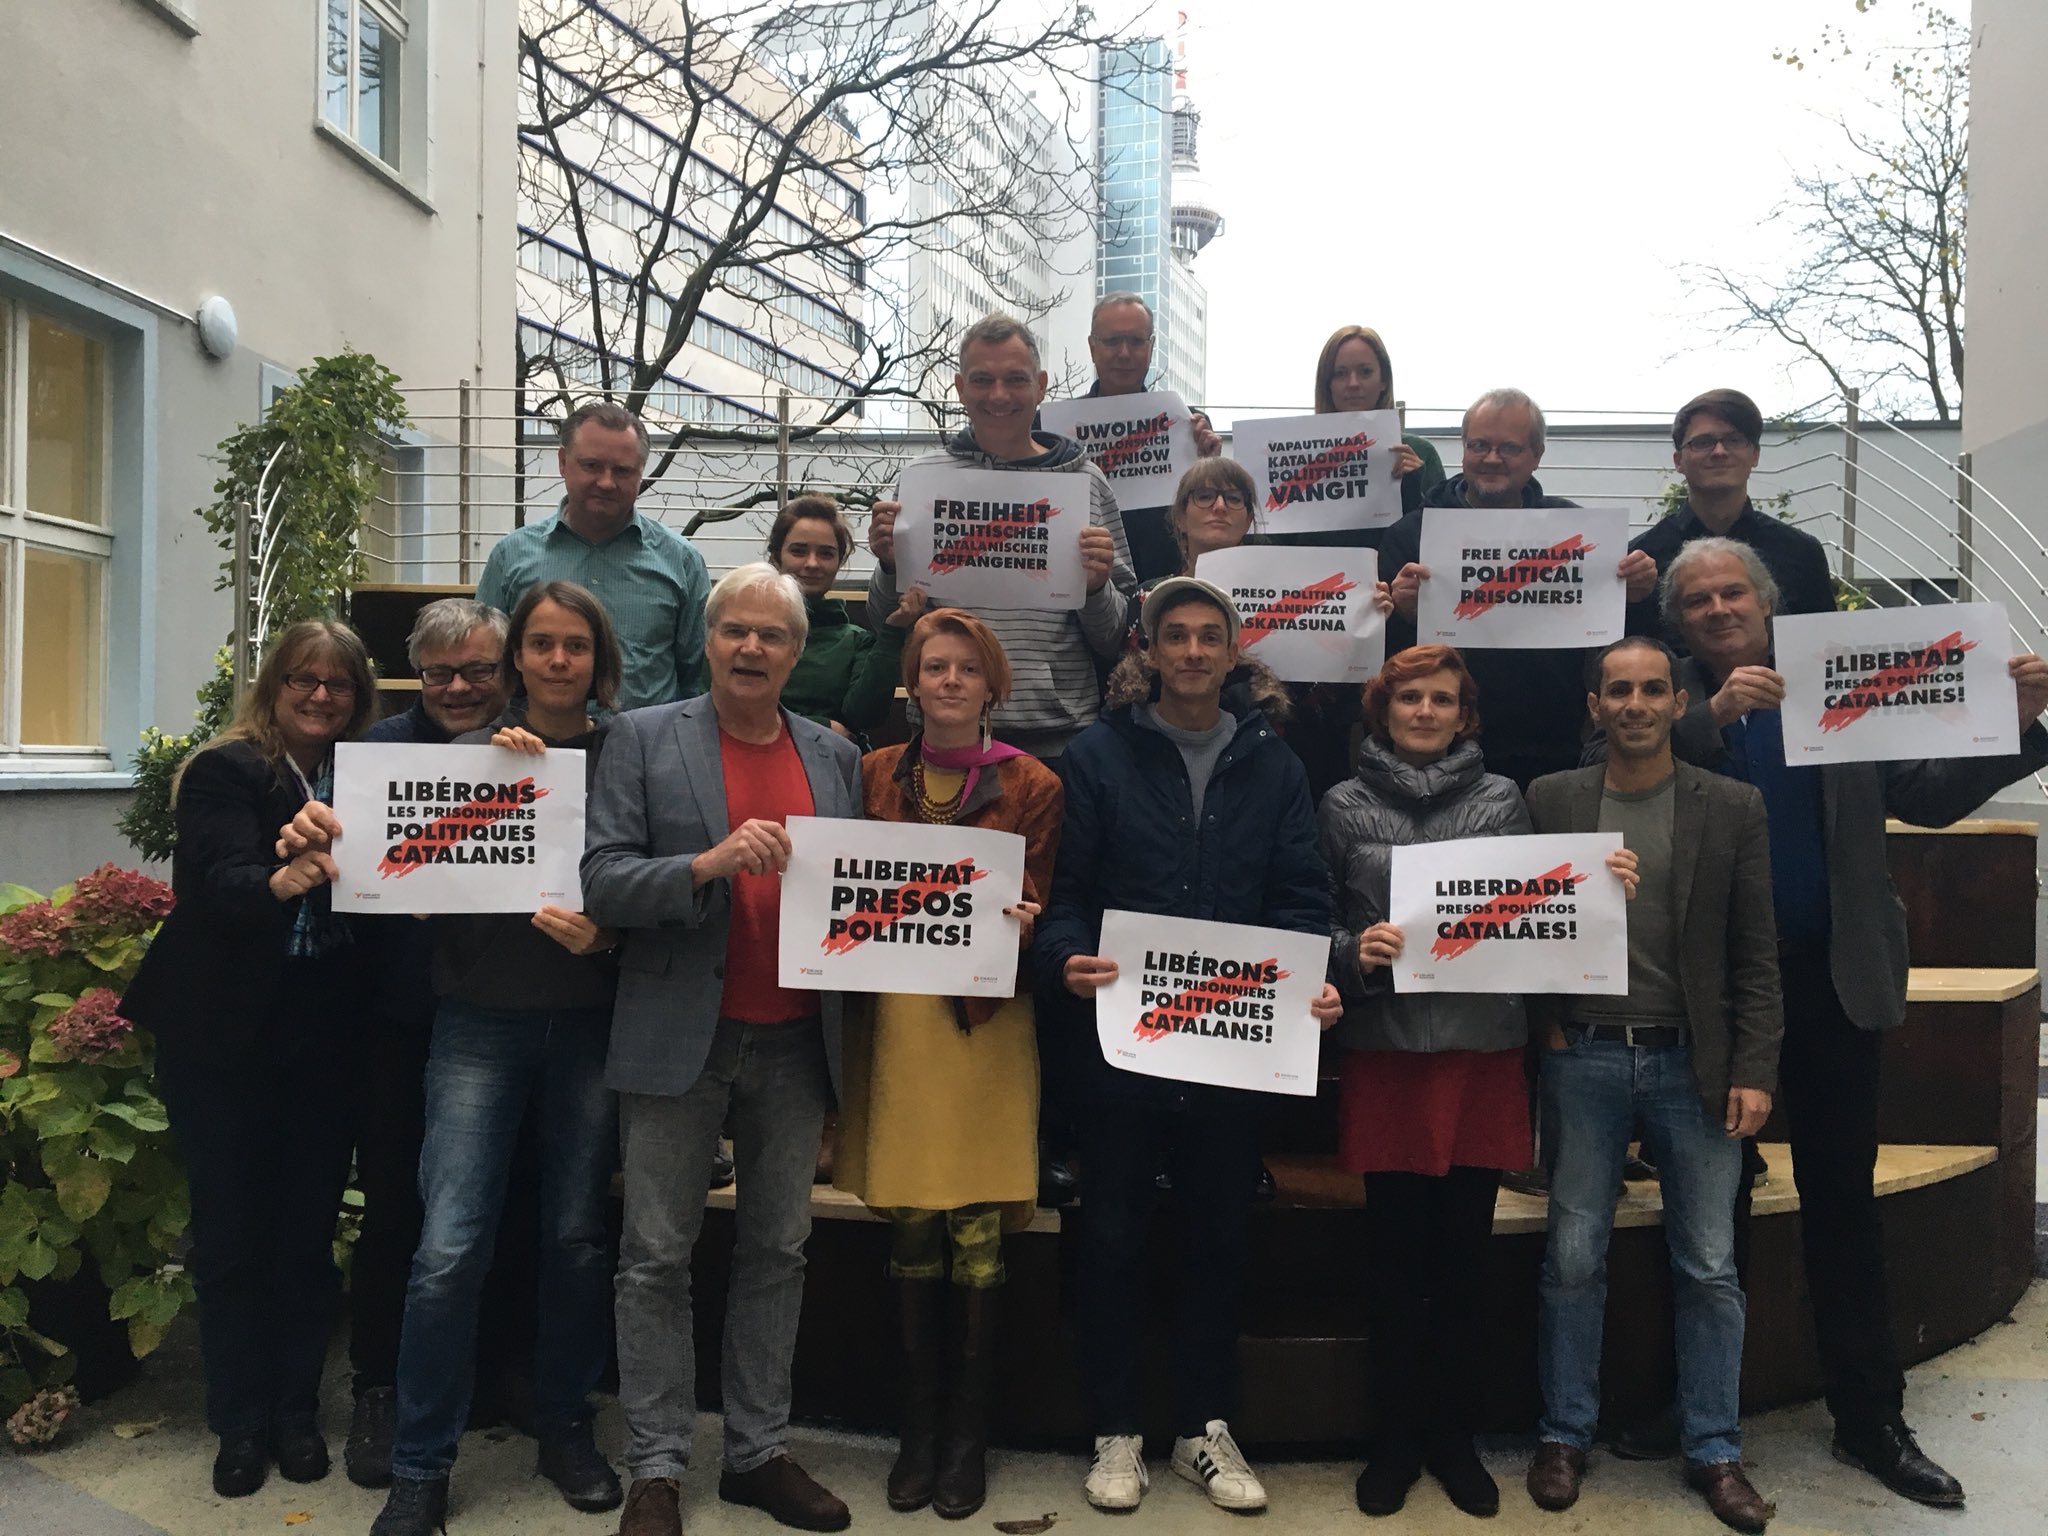 Die Linke defensa l'alliberament dels presos polítics catalans